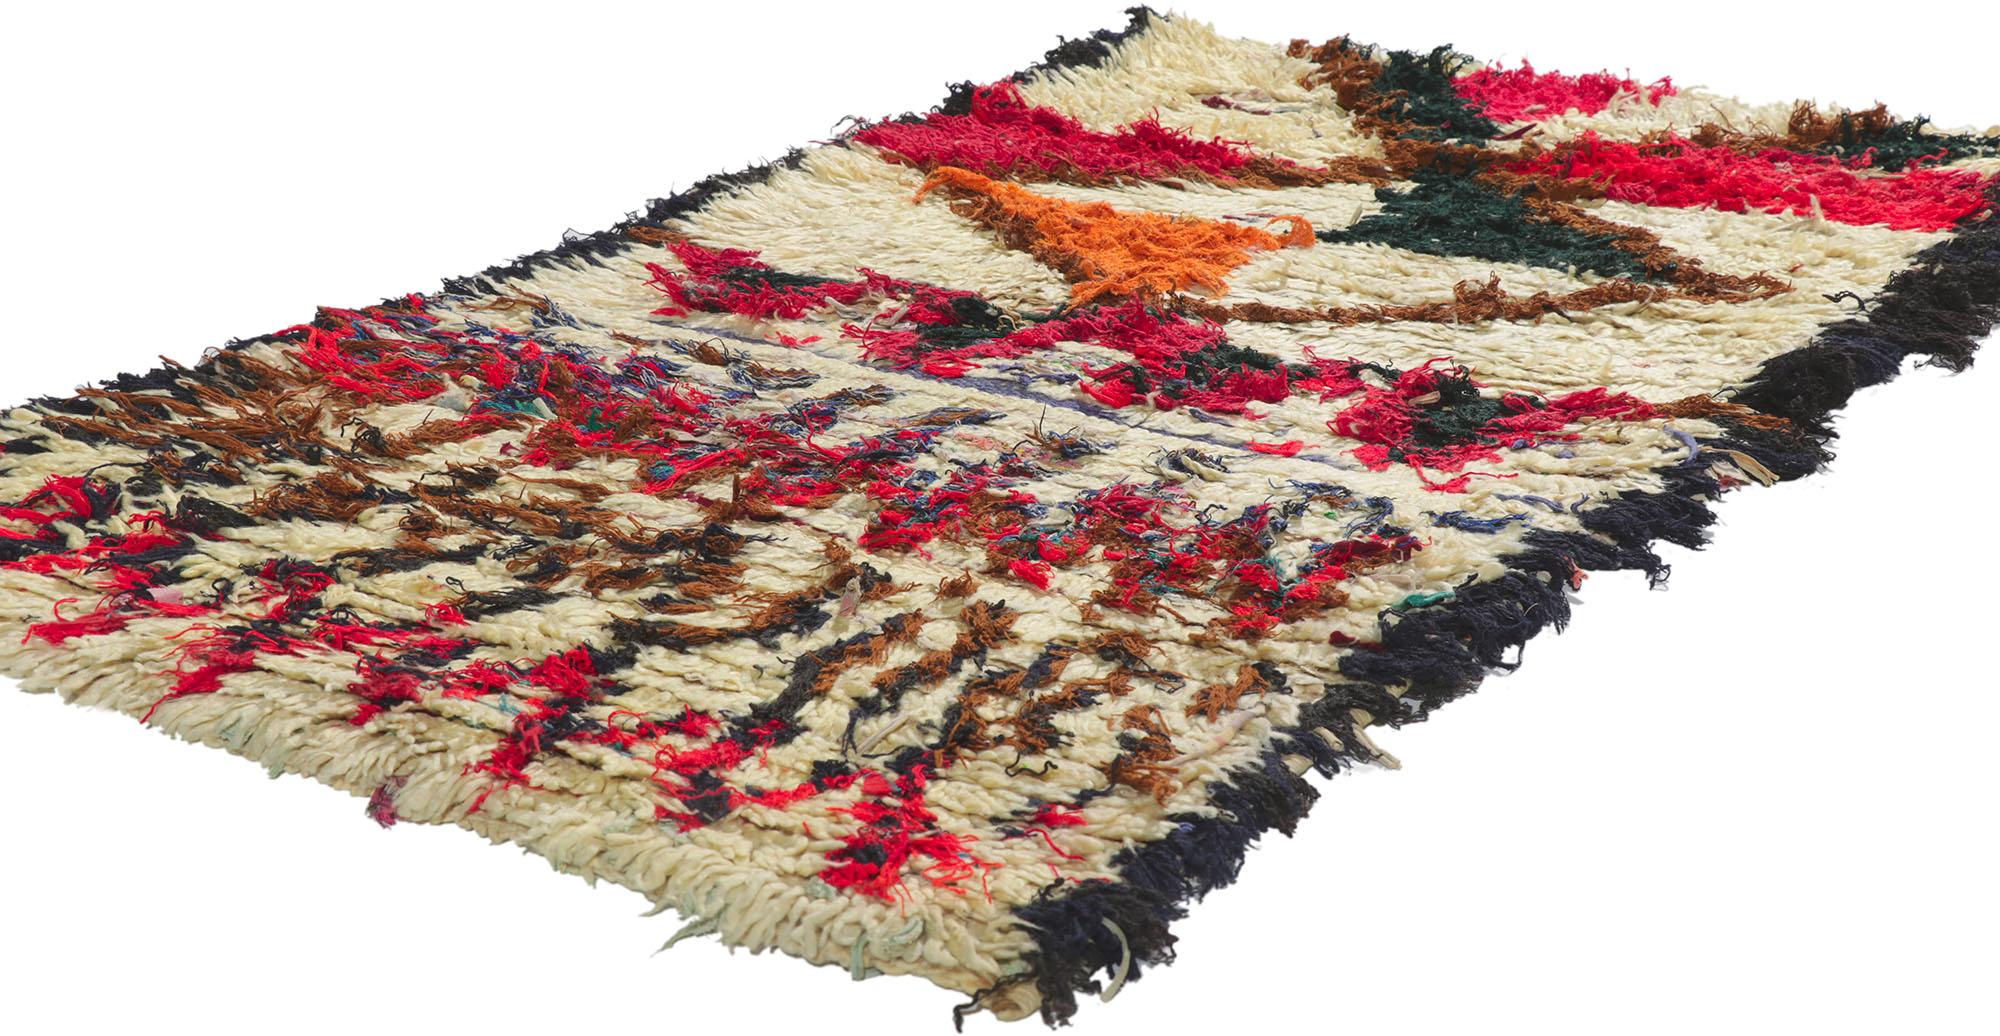 21626 Vintage Berber Moroccan Boucherouite Rag rug 03'00 x 05'09. Avec son motif tribal expressif, ses détails et sa texture incroyables, ce tapis Boucherouite berbère marocain vintage noué à la main est une vision captivante de la beauté tissée. Le